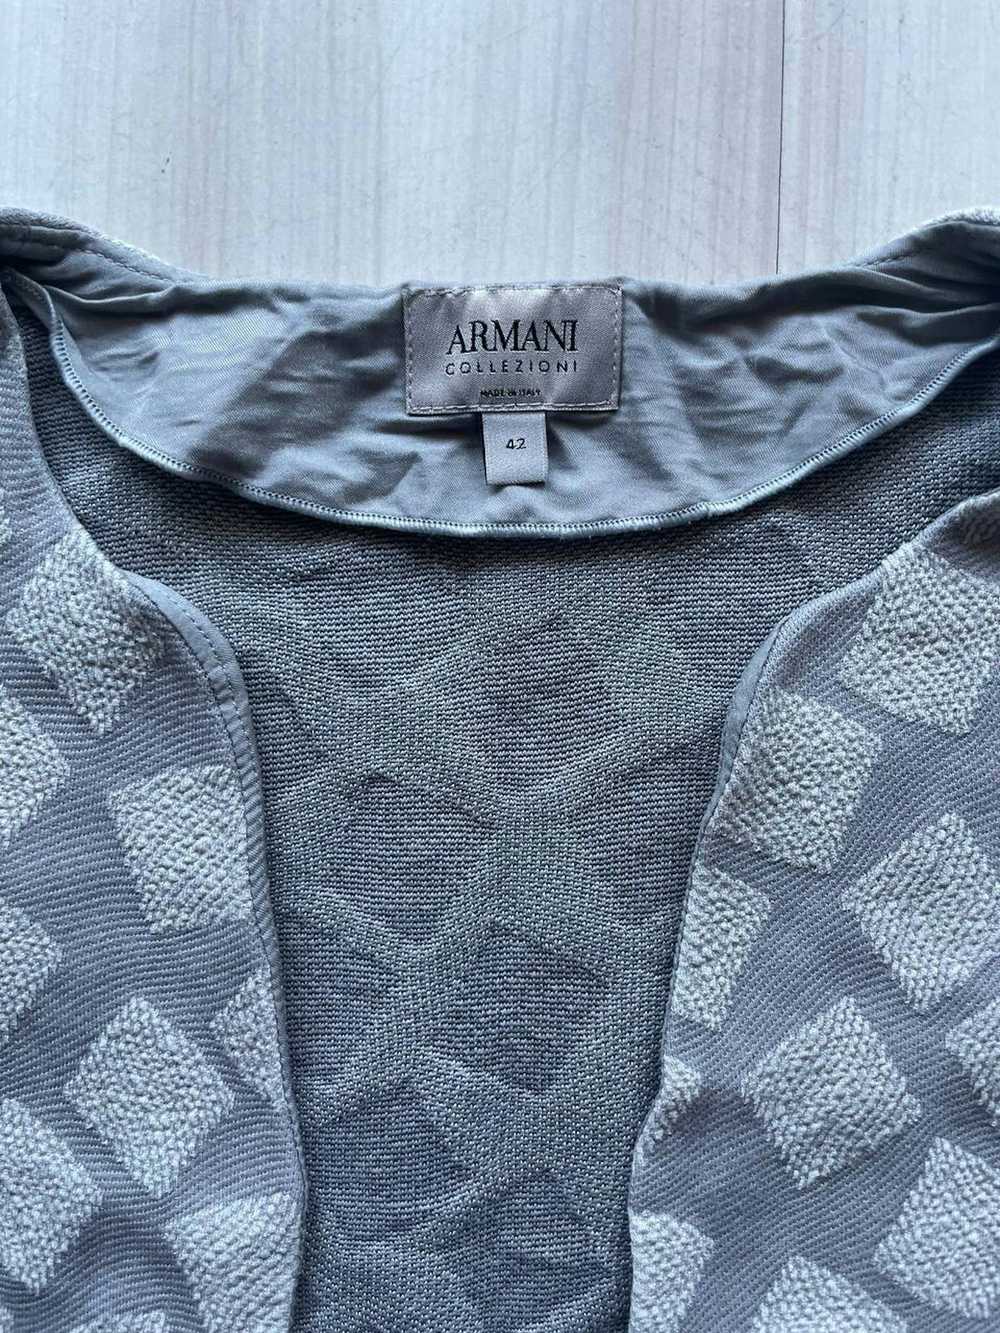 Armani × Luxury × Vintage Armani Vintage - image 4